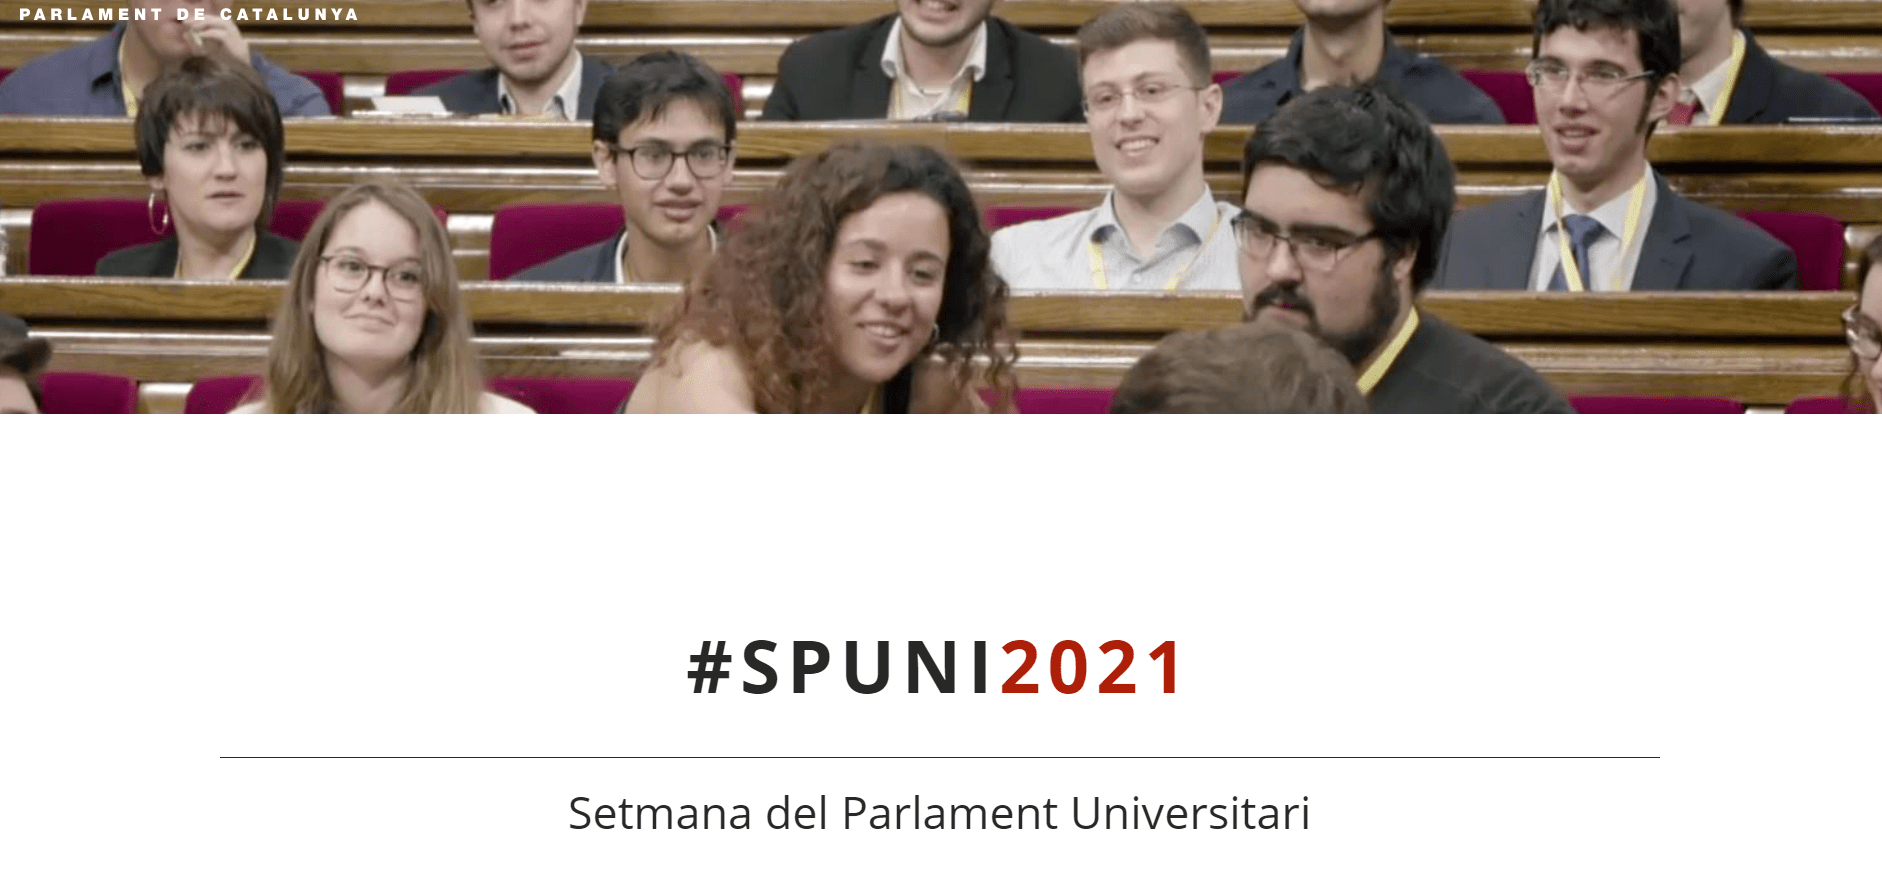 Obertes les inscripcions a la SPUNI, la Setmana del Parlament Universitari 2021